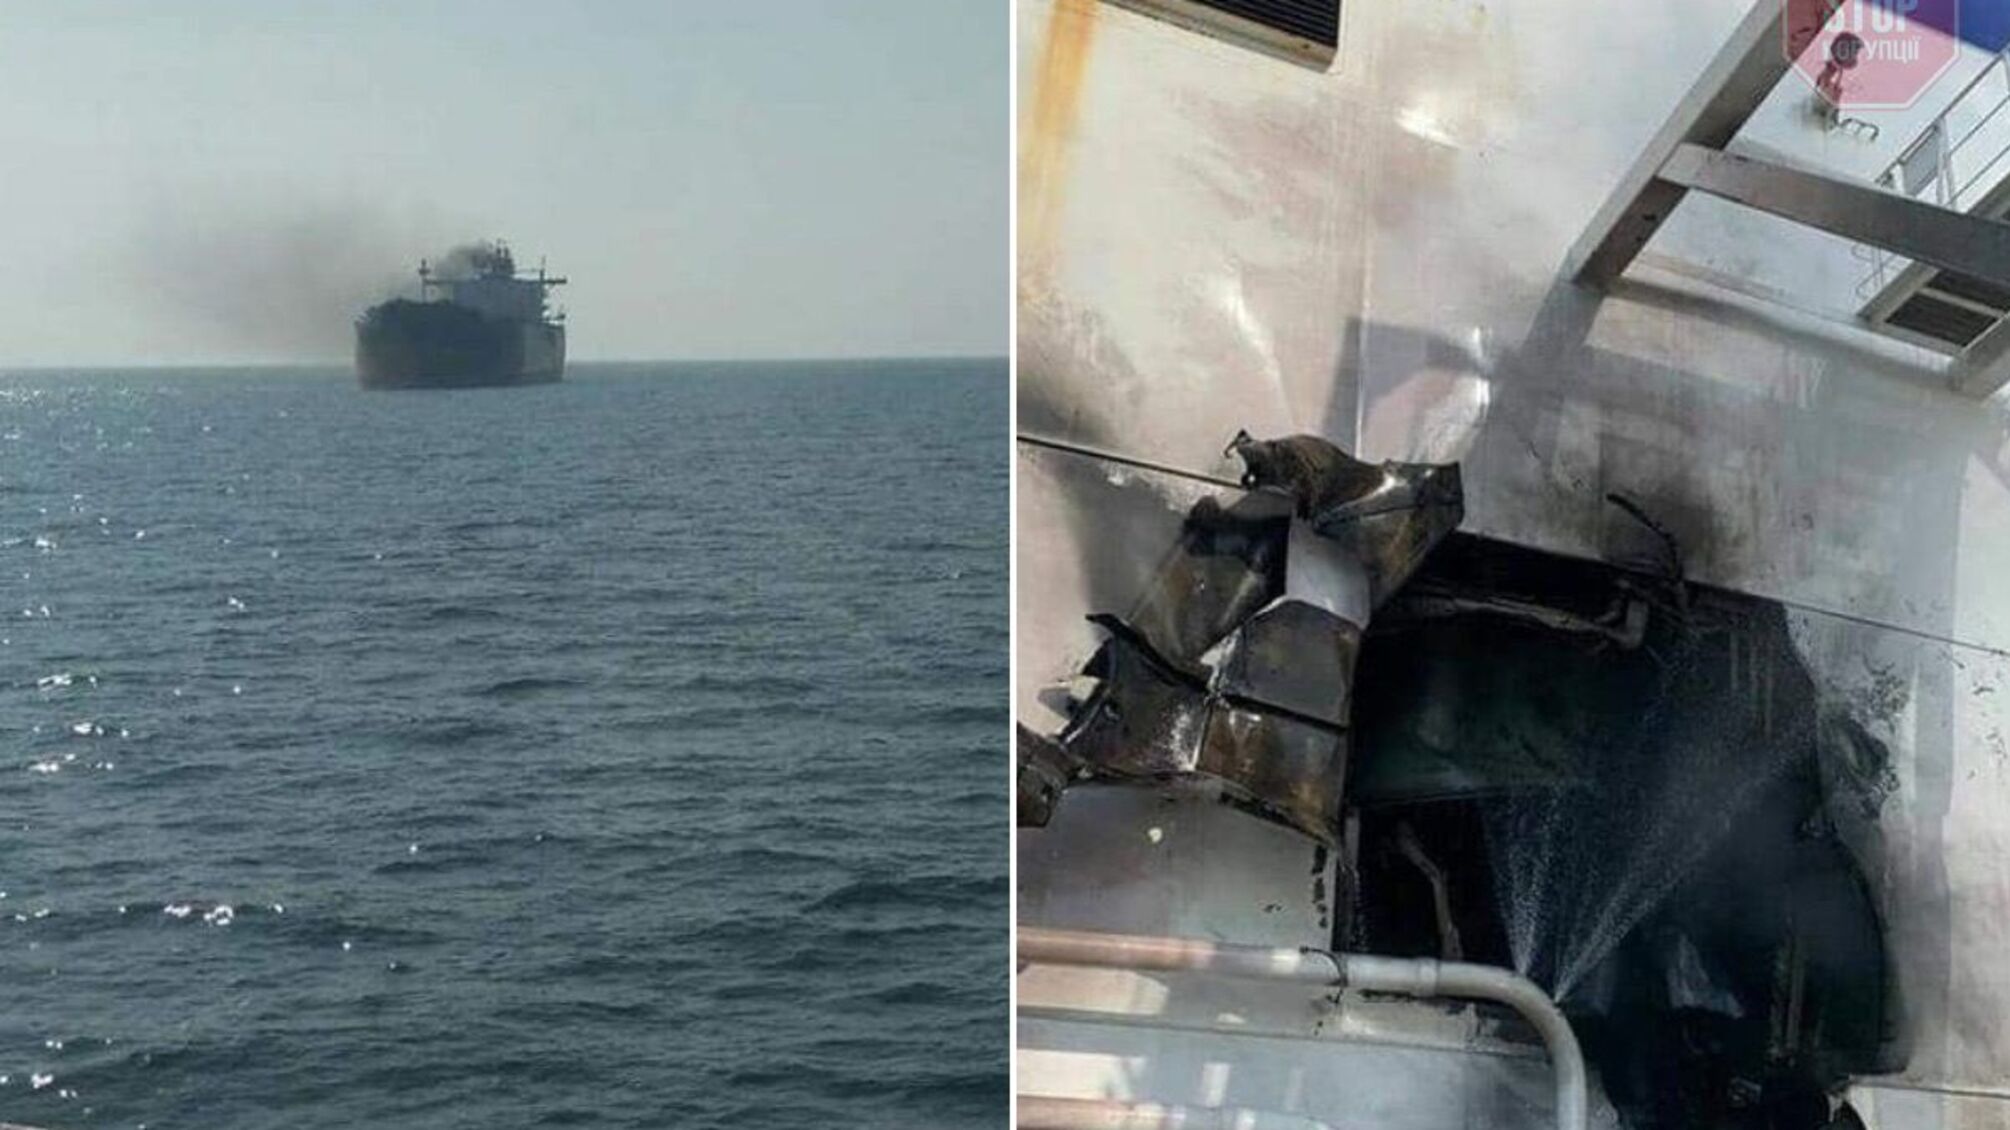 Росіяни підбили молдовське судно в Чорному морі, - ВМС ЗСУ (оновлено)